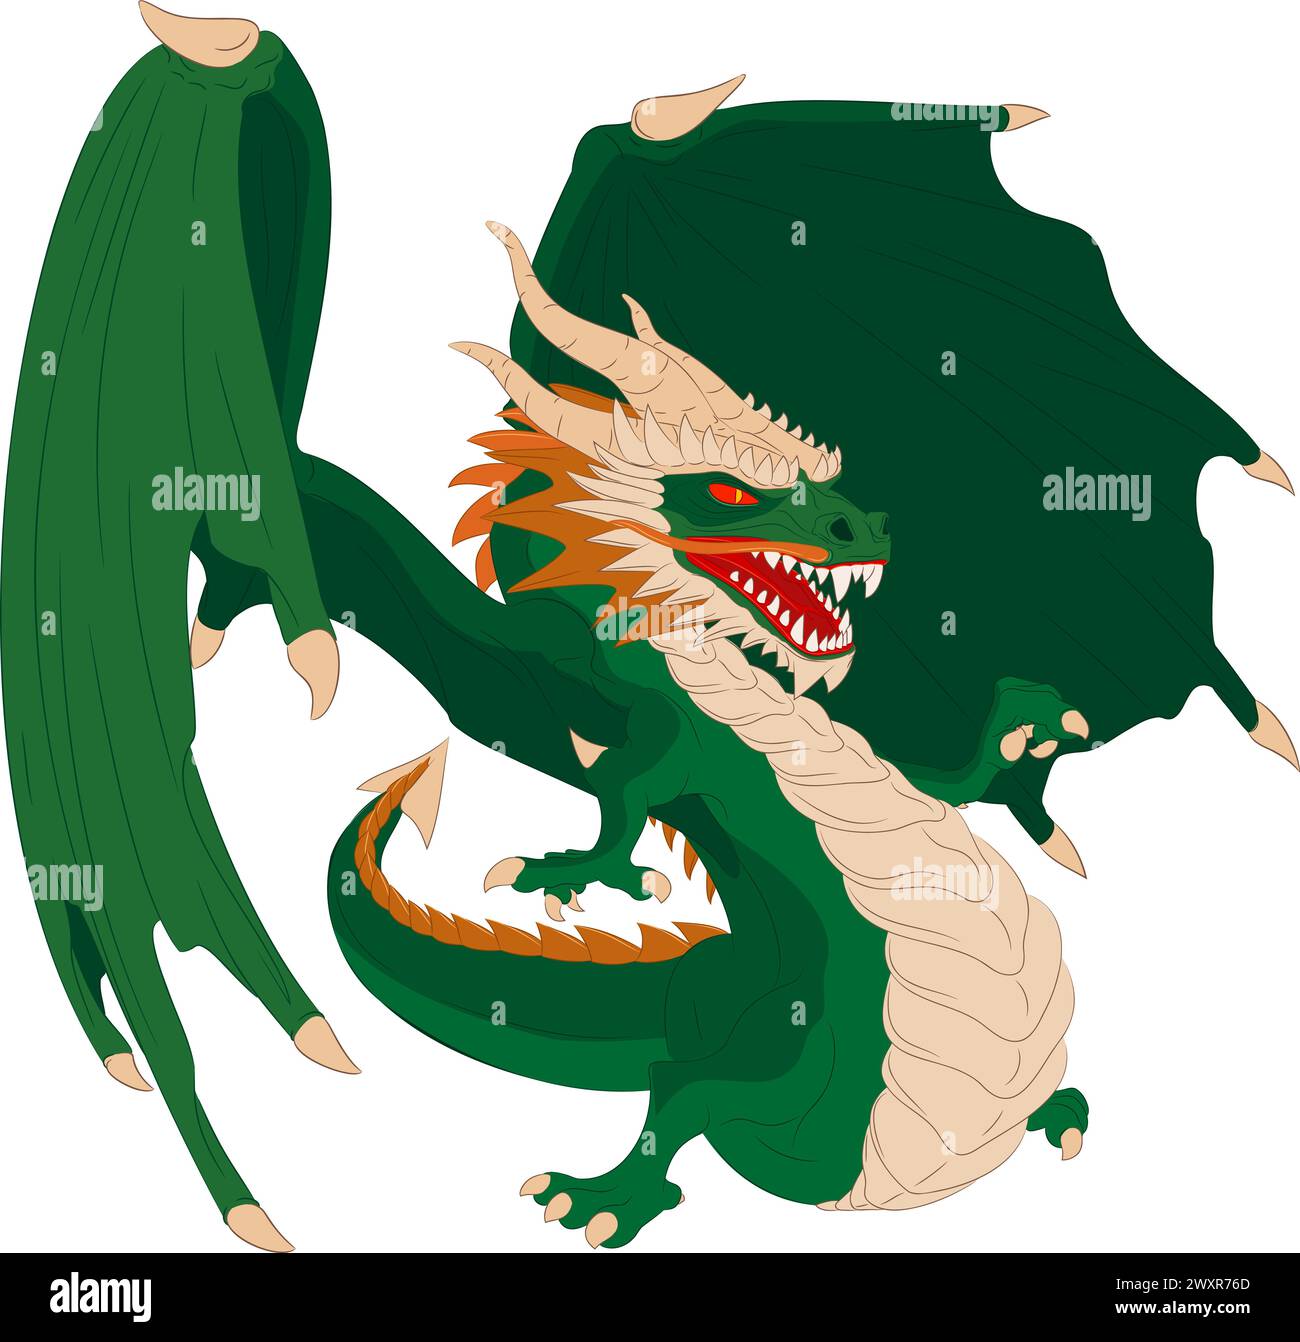 Drago verde in legno con ali. Illustrazione vettoriale del drago alato verde che punta con il dito della zampa destra. Illustrazione Vettoriale